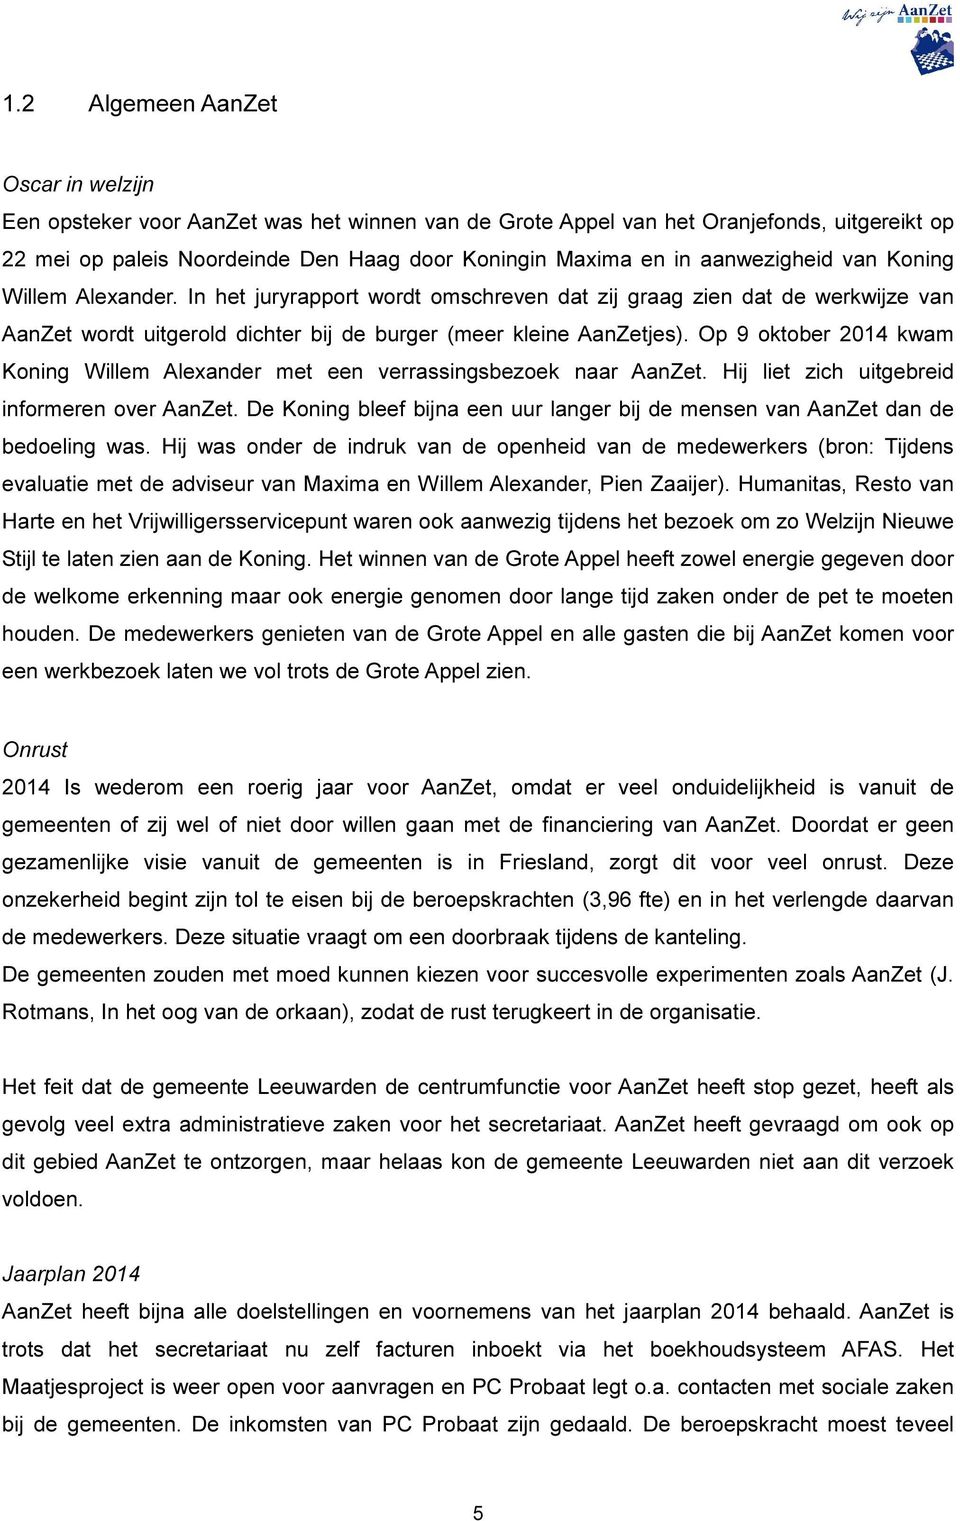 Op 9 oktober 2014 kwam Koning Willem Alexander met een verrassingsbezoek naar AanZet. Hij liet zich uitgebreid informeren over AanZet.